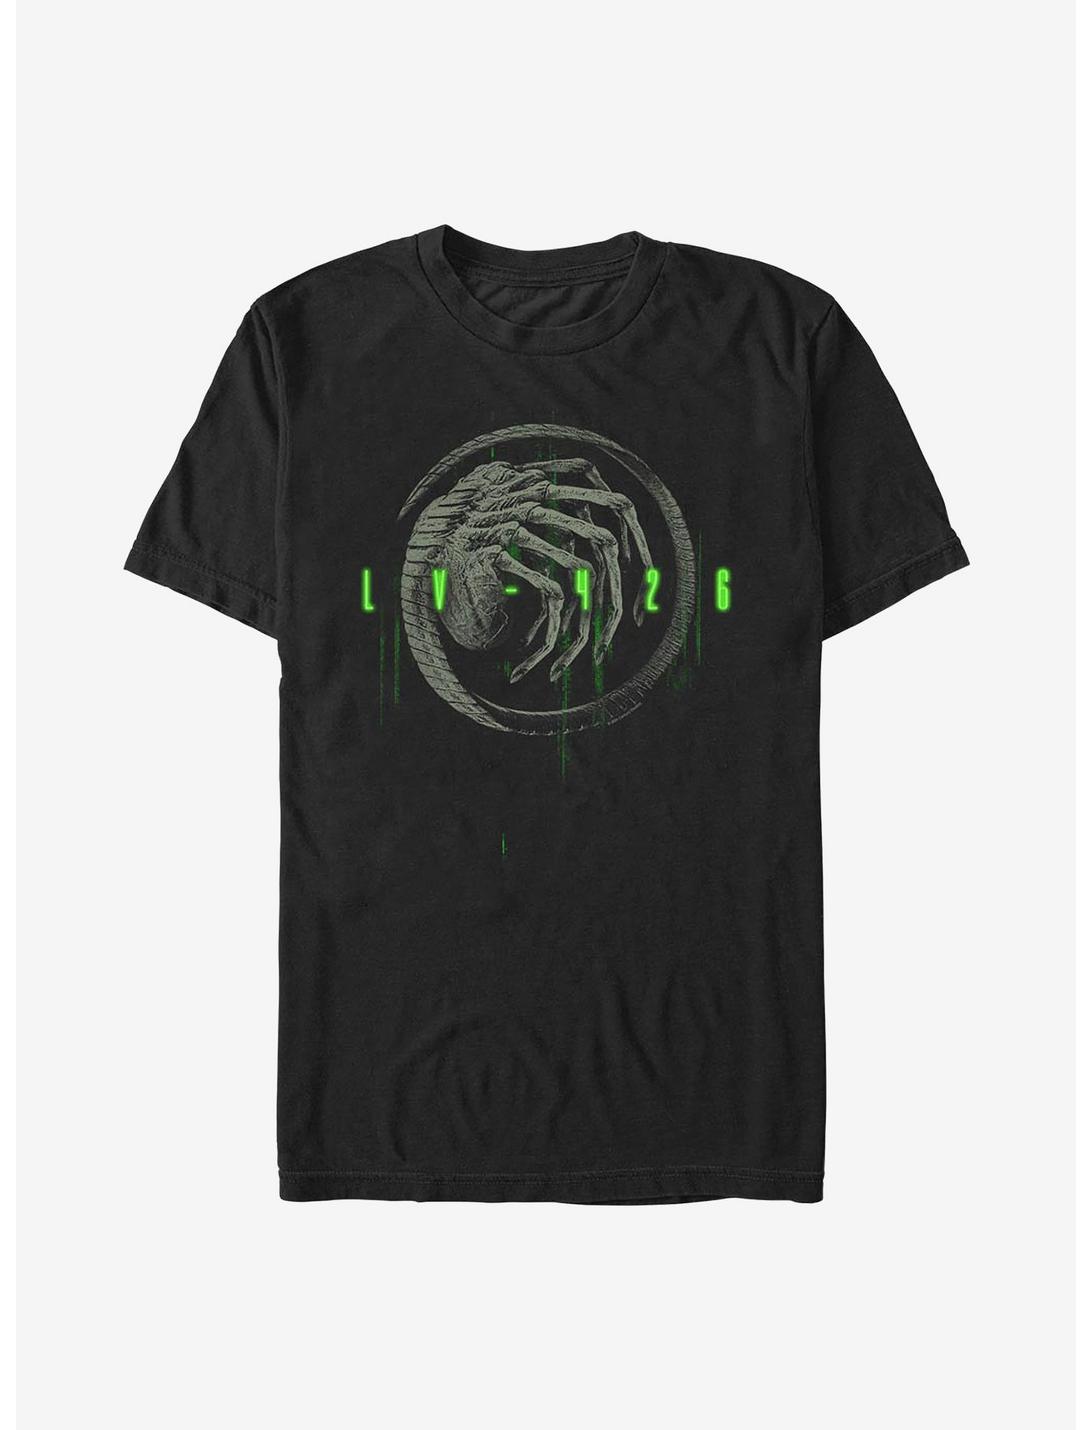 Alien LV-426 T-Shirt, BLACK, hi-res